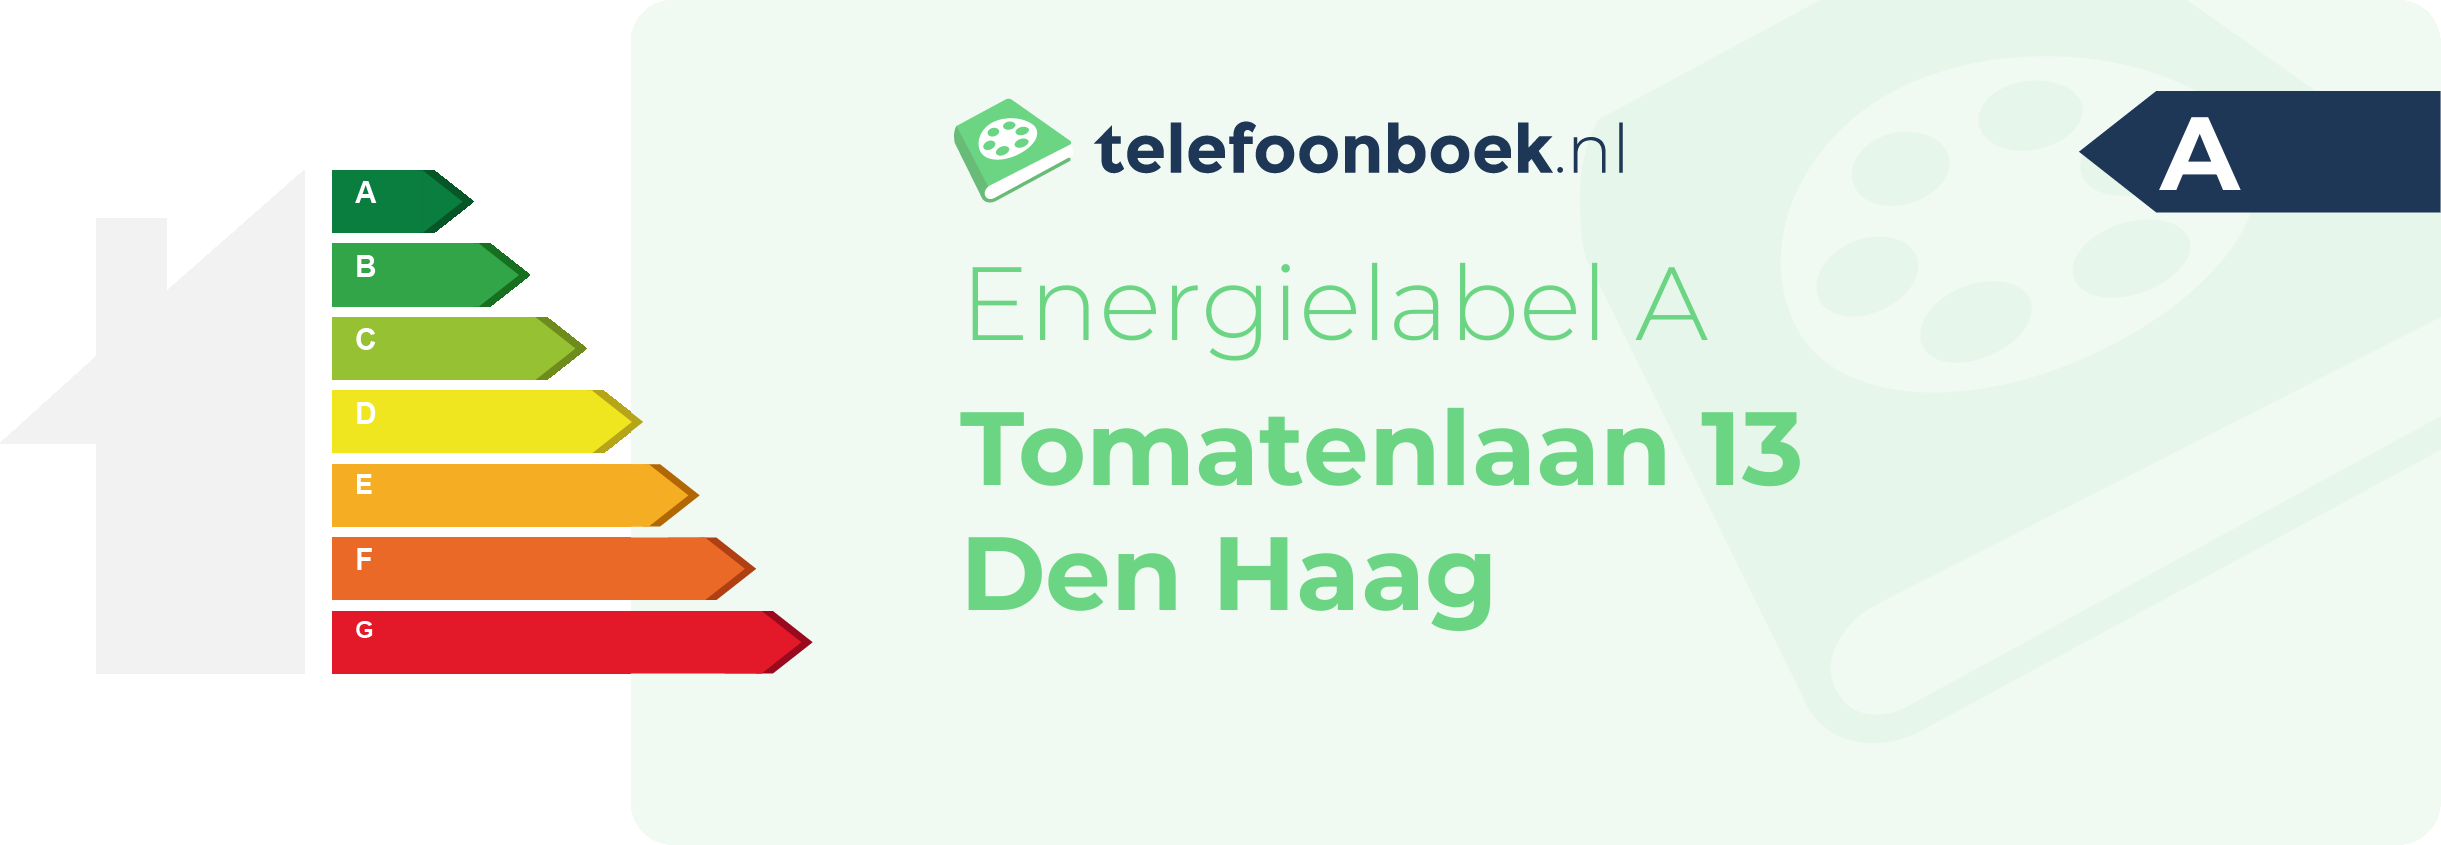 Energielabel Tomatenlaan 13 Den Haag